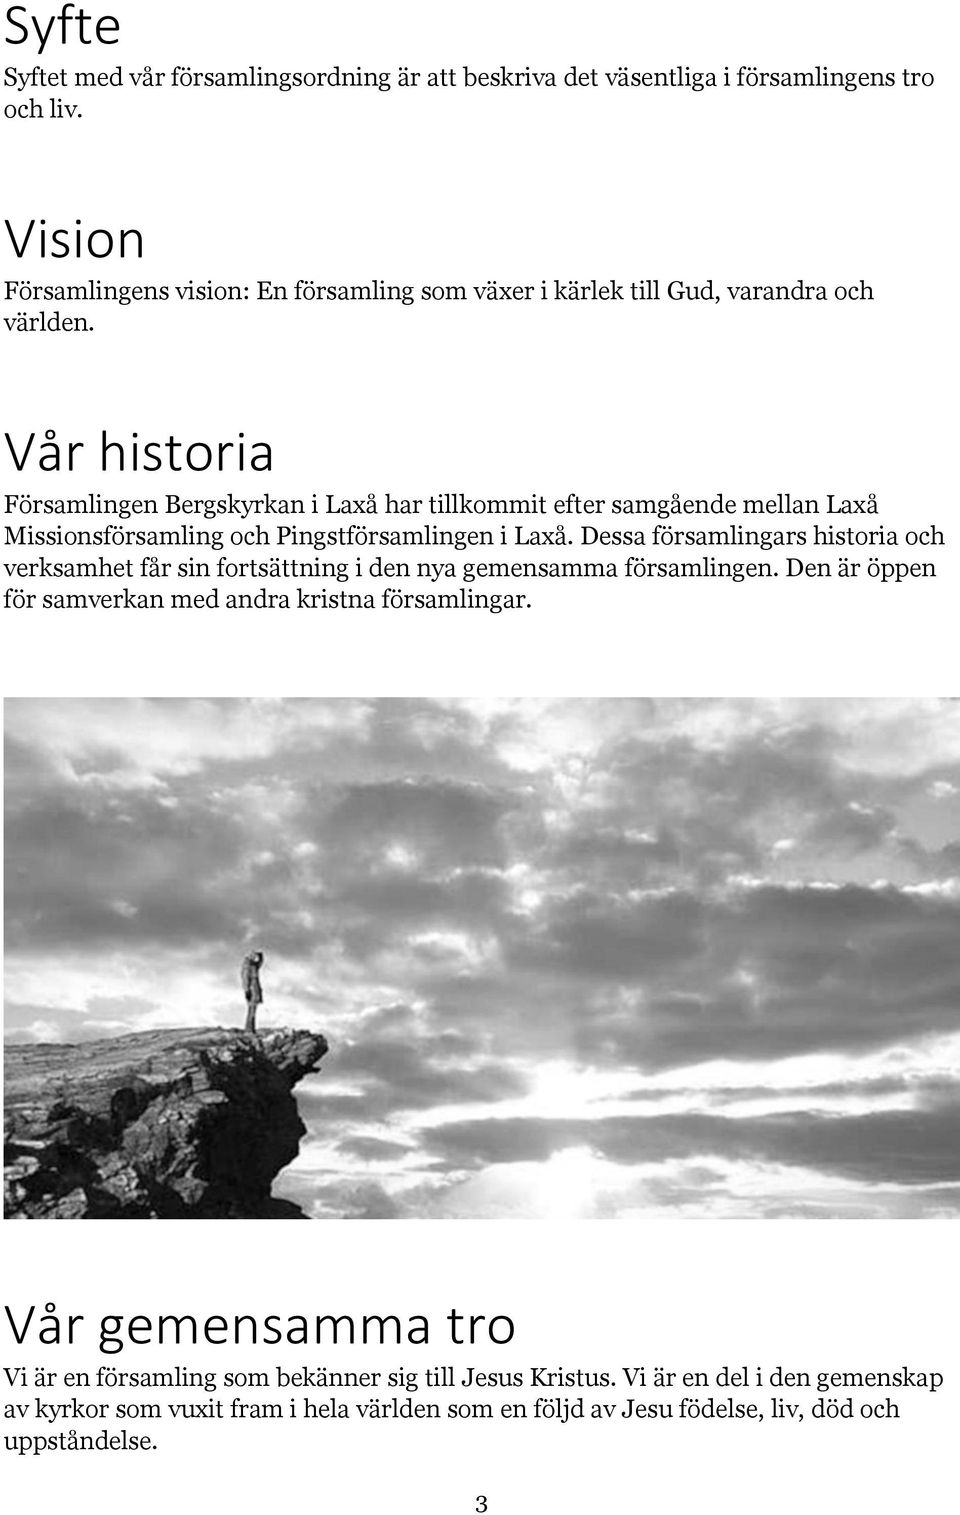 Vår historia Församlingen Bergskyrkan i Laxå har tillkommit efter samgående mellan Laxå Missionsförsamling och Pingstförsamlingen i Laxå.